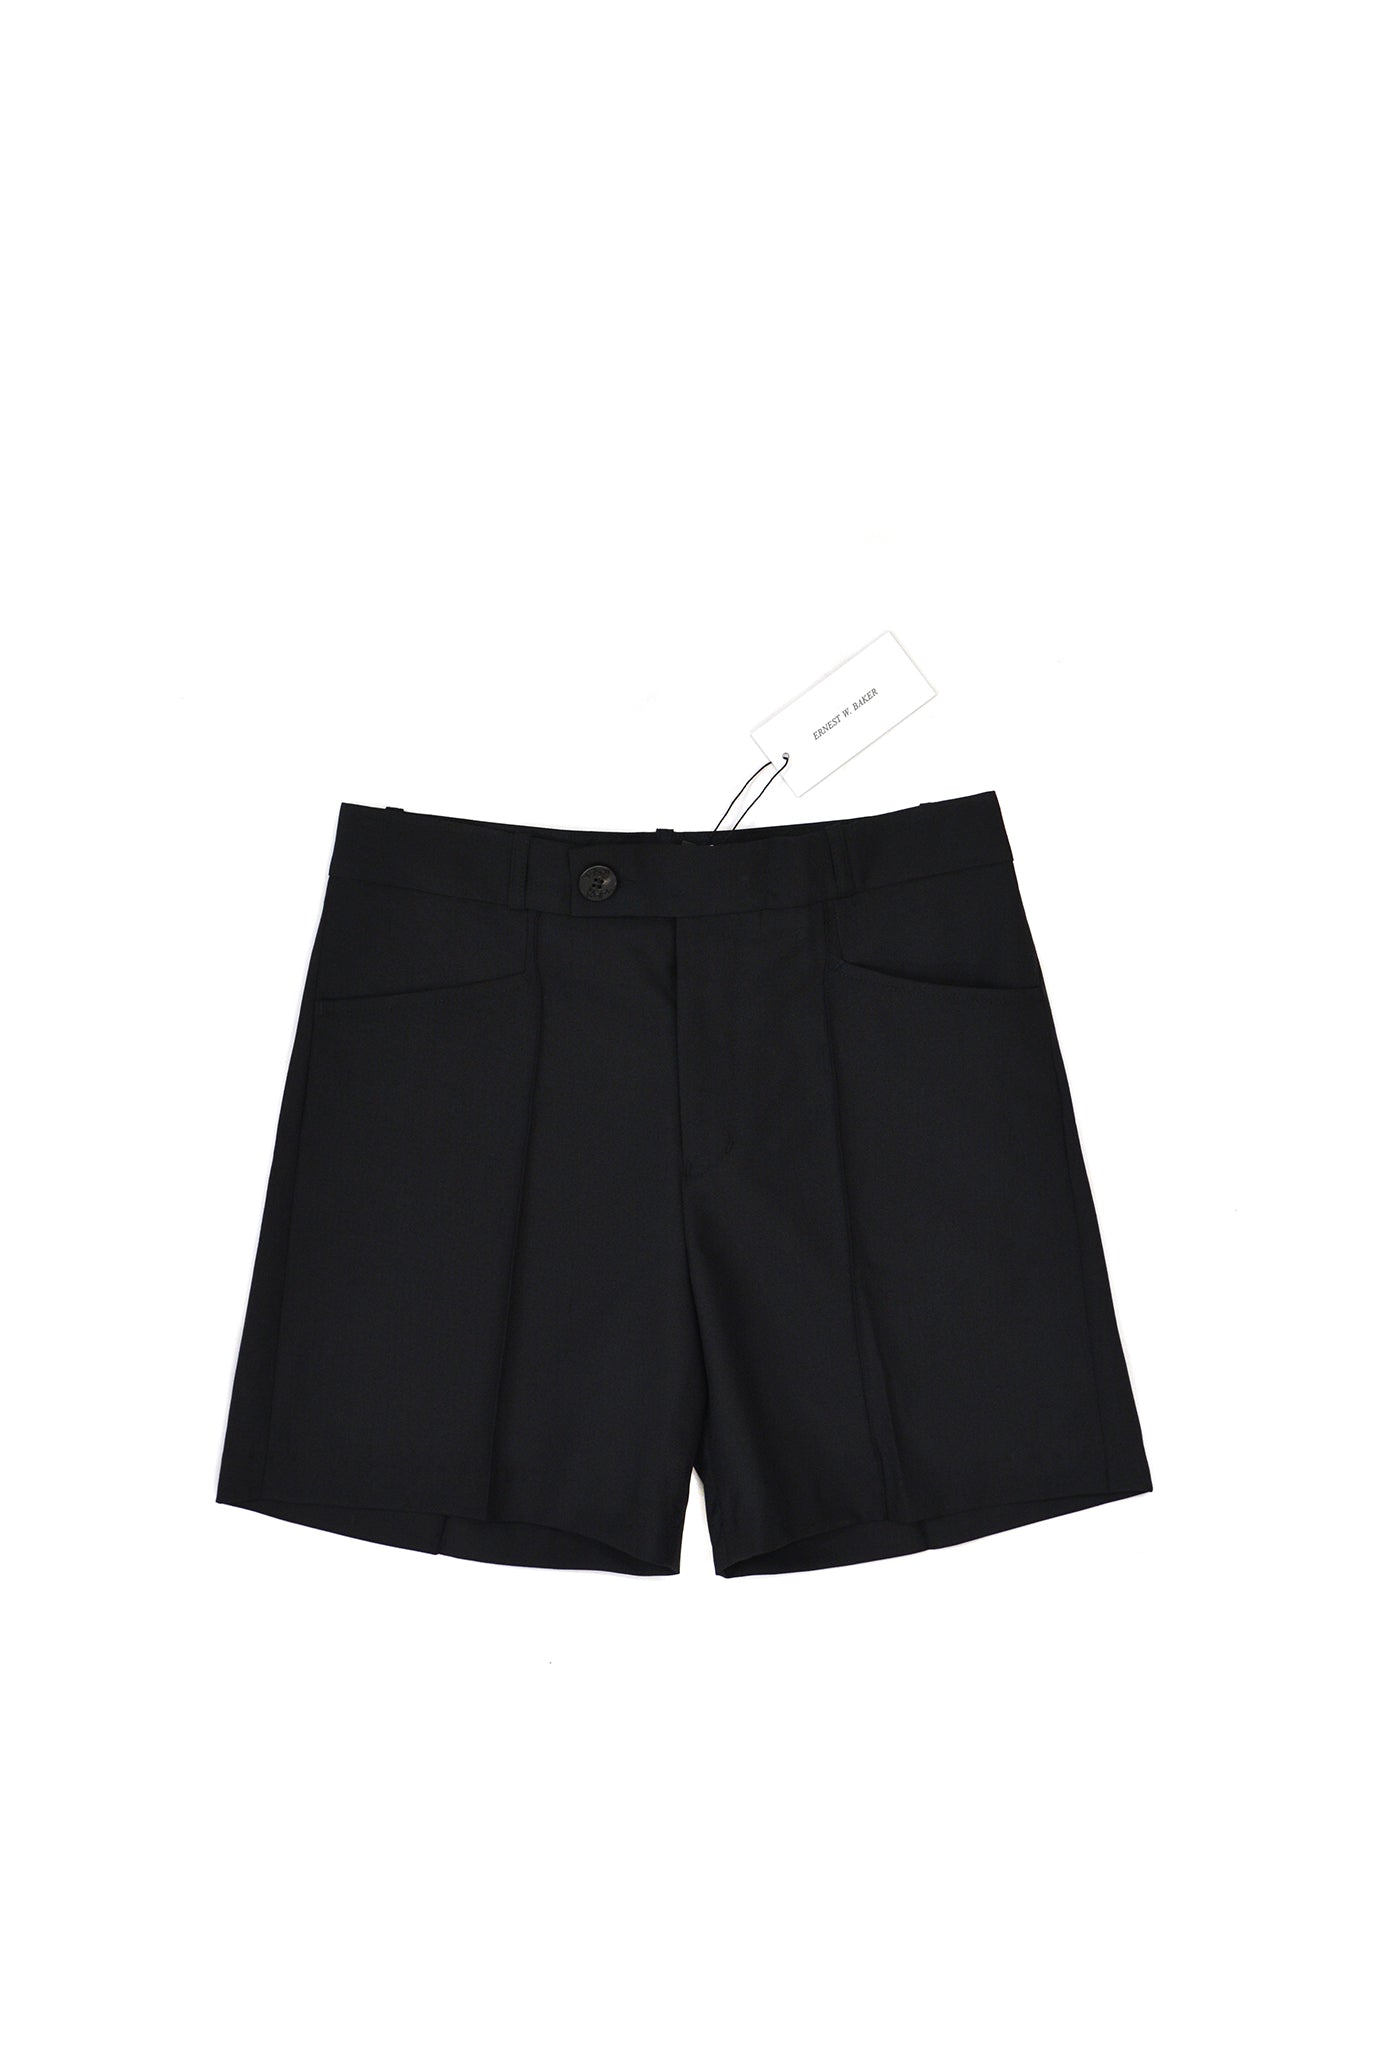 Ernest W. Baker Tailored Shorts, Black – SOOP SOOP